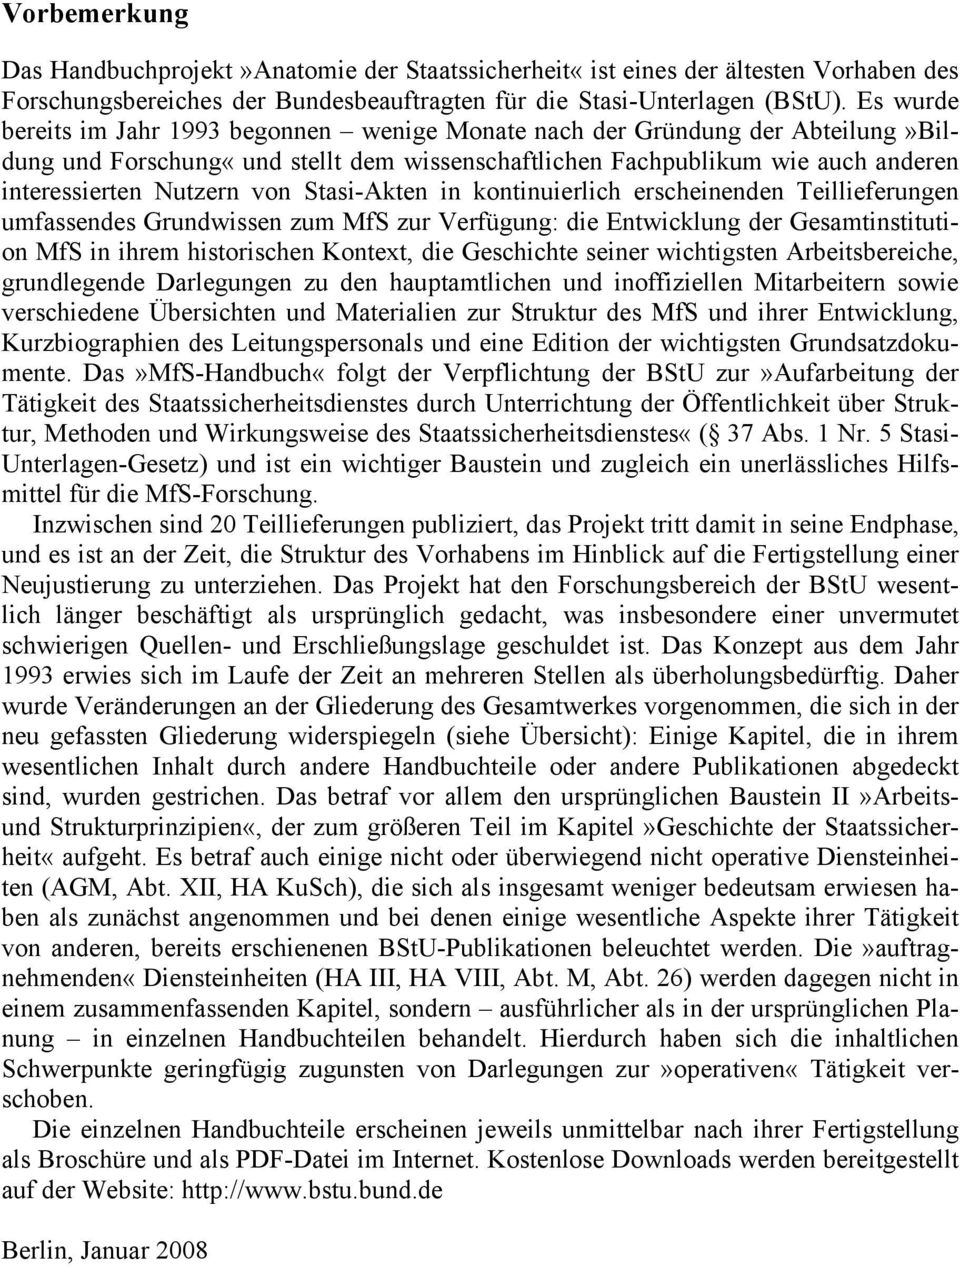 Stasi-Akten in kontinuierlich erscheinenden Teillieferungen umfassendes Grundwissen zum MfS zur Verfügung: die Entwicklung der Gesamtinstitution MfS in ihrem historischen Kontext, die Geschichte